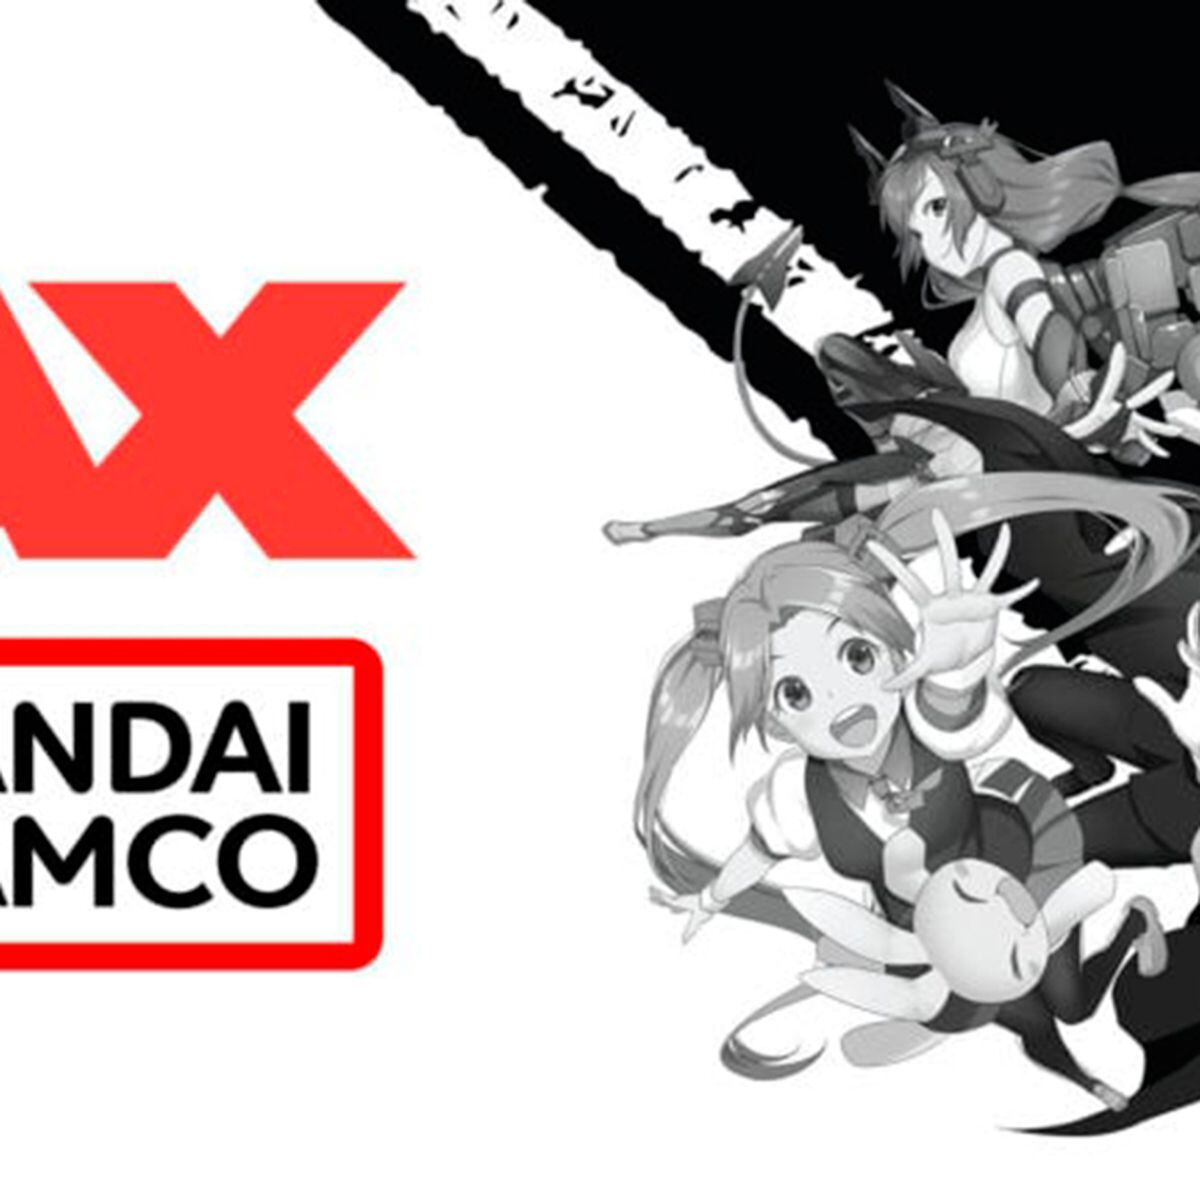 Sword Art Online: Last Recollection launches October 5 in Japan, October 6  worldwide - Gematsu